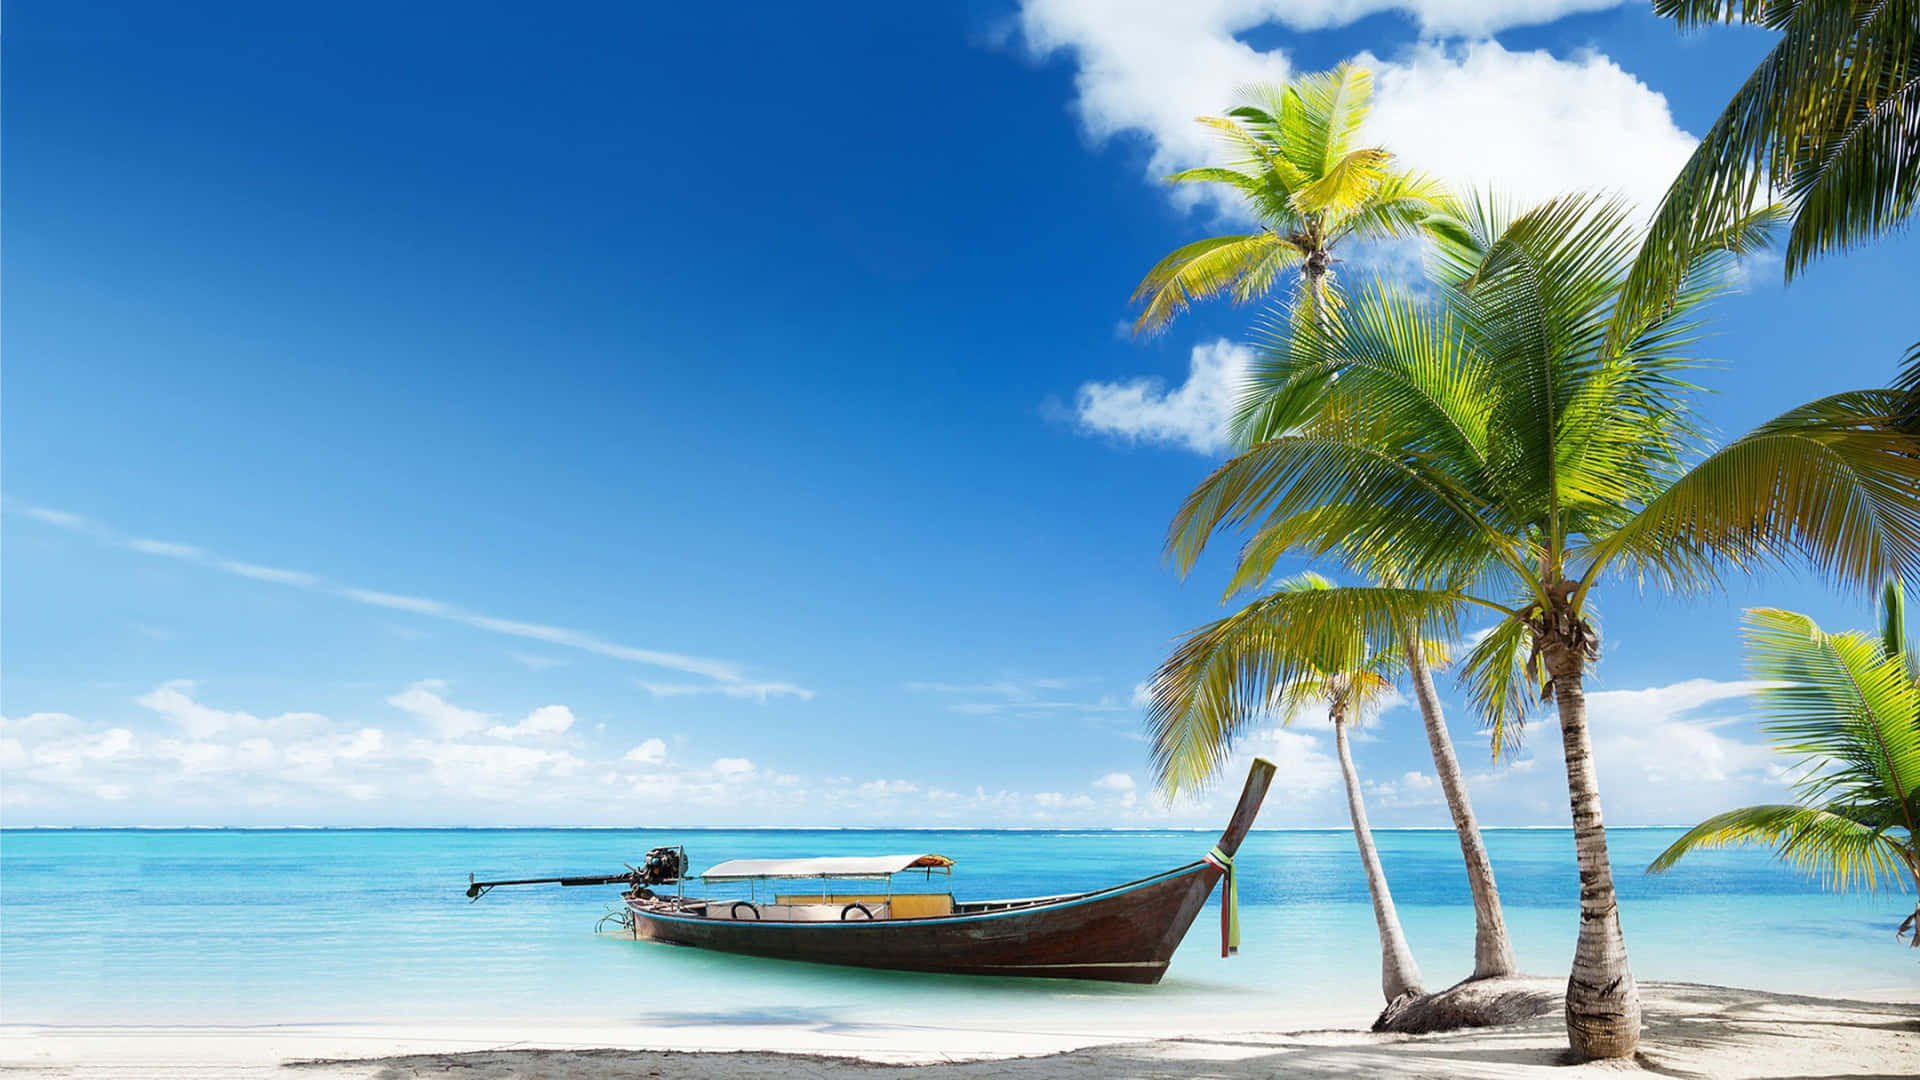 Entspannensie An Einem Friedlichen Strand In Der Karibik. Wallpaper